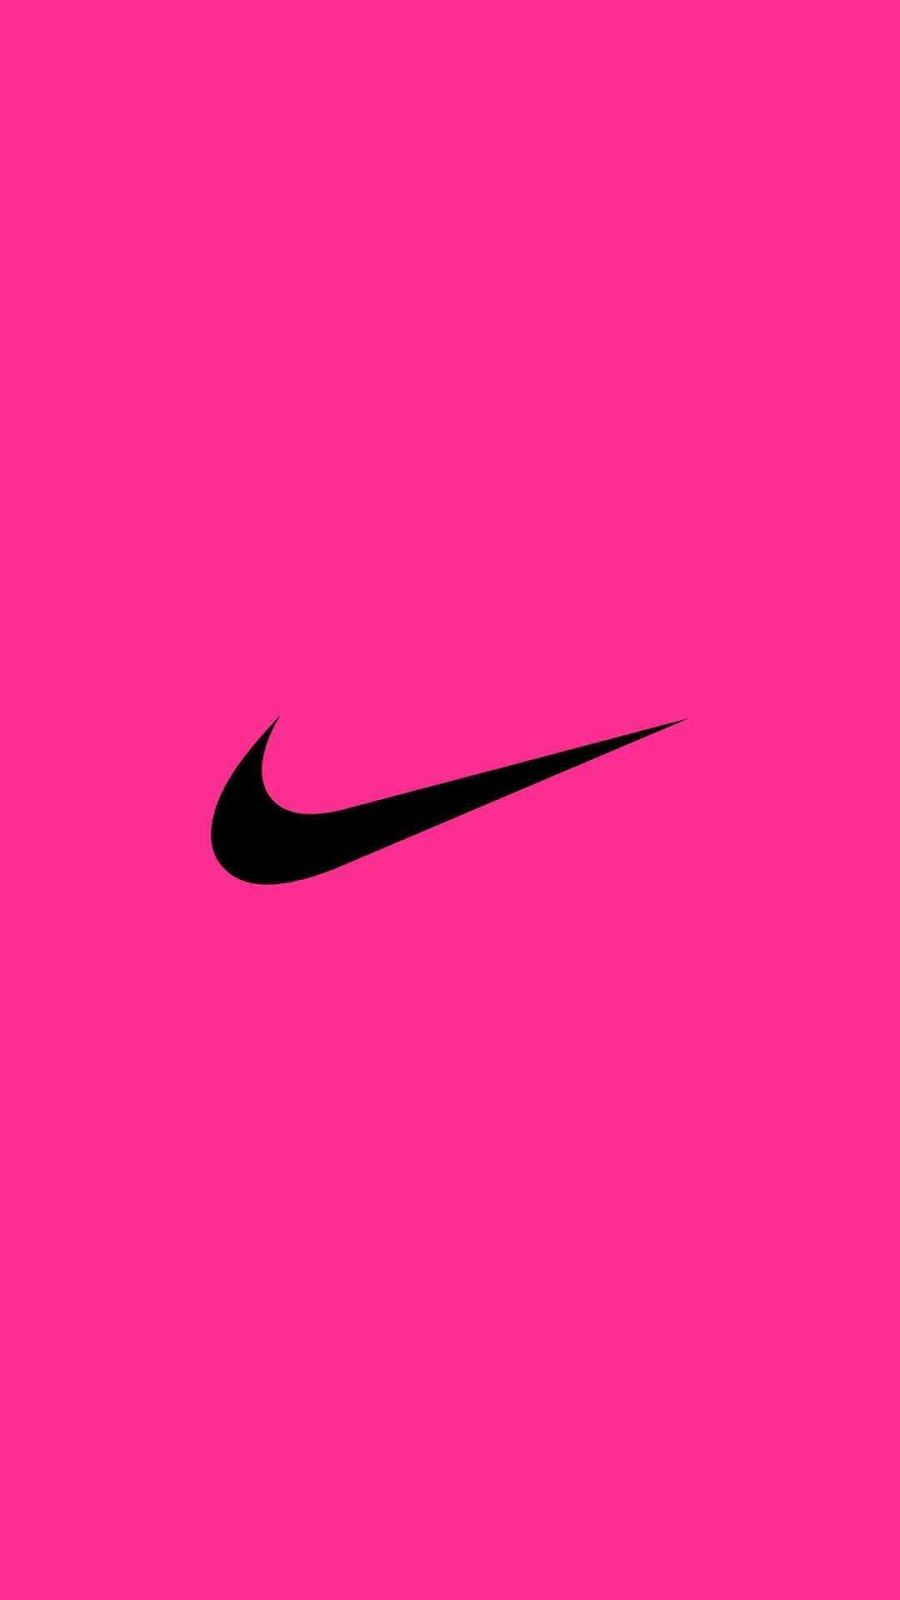 Hãy chiêm ngưỡng huyền thoại Nike với logo đặc trưng của thương hiệu. Chỉ một cái nhìn đã đủ để cảm nhận sức mạnh và đẳng cấp của Nike. Bạn có muốn khám phá thêm về tầm ảnh hưởng của thương hiệu này? Hãy xem ngay hình ảnh liên quan đến logo Nike.